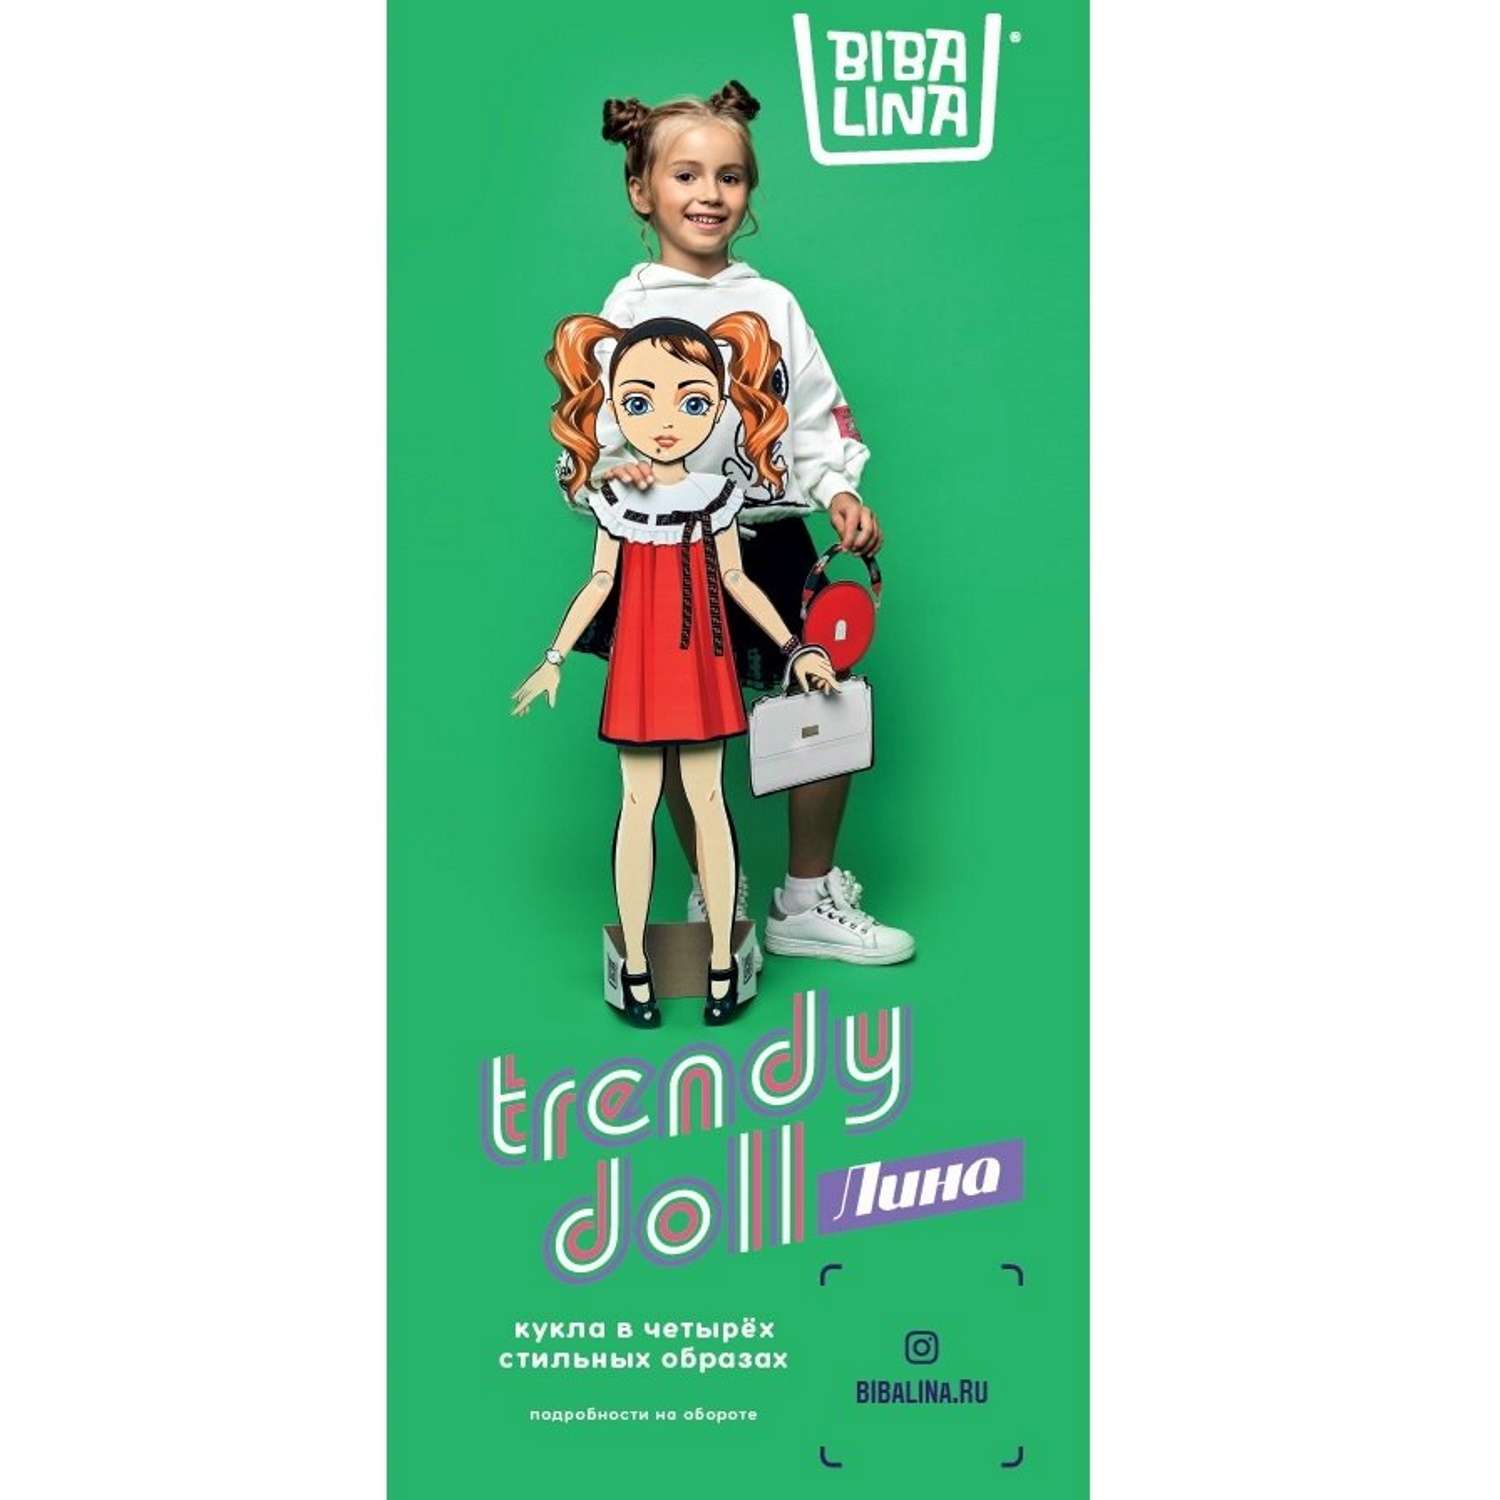 Кукла BIBALINA с одеждой из картона Trendy doll Лина ИНП-100 - фото 4